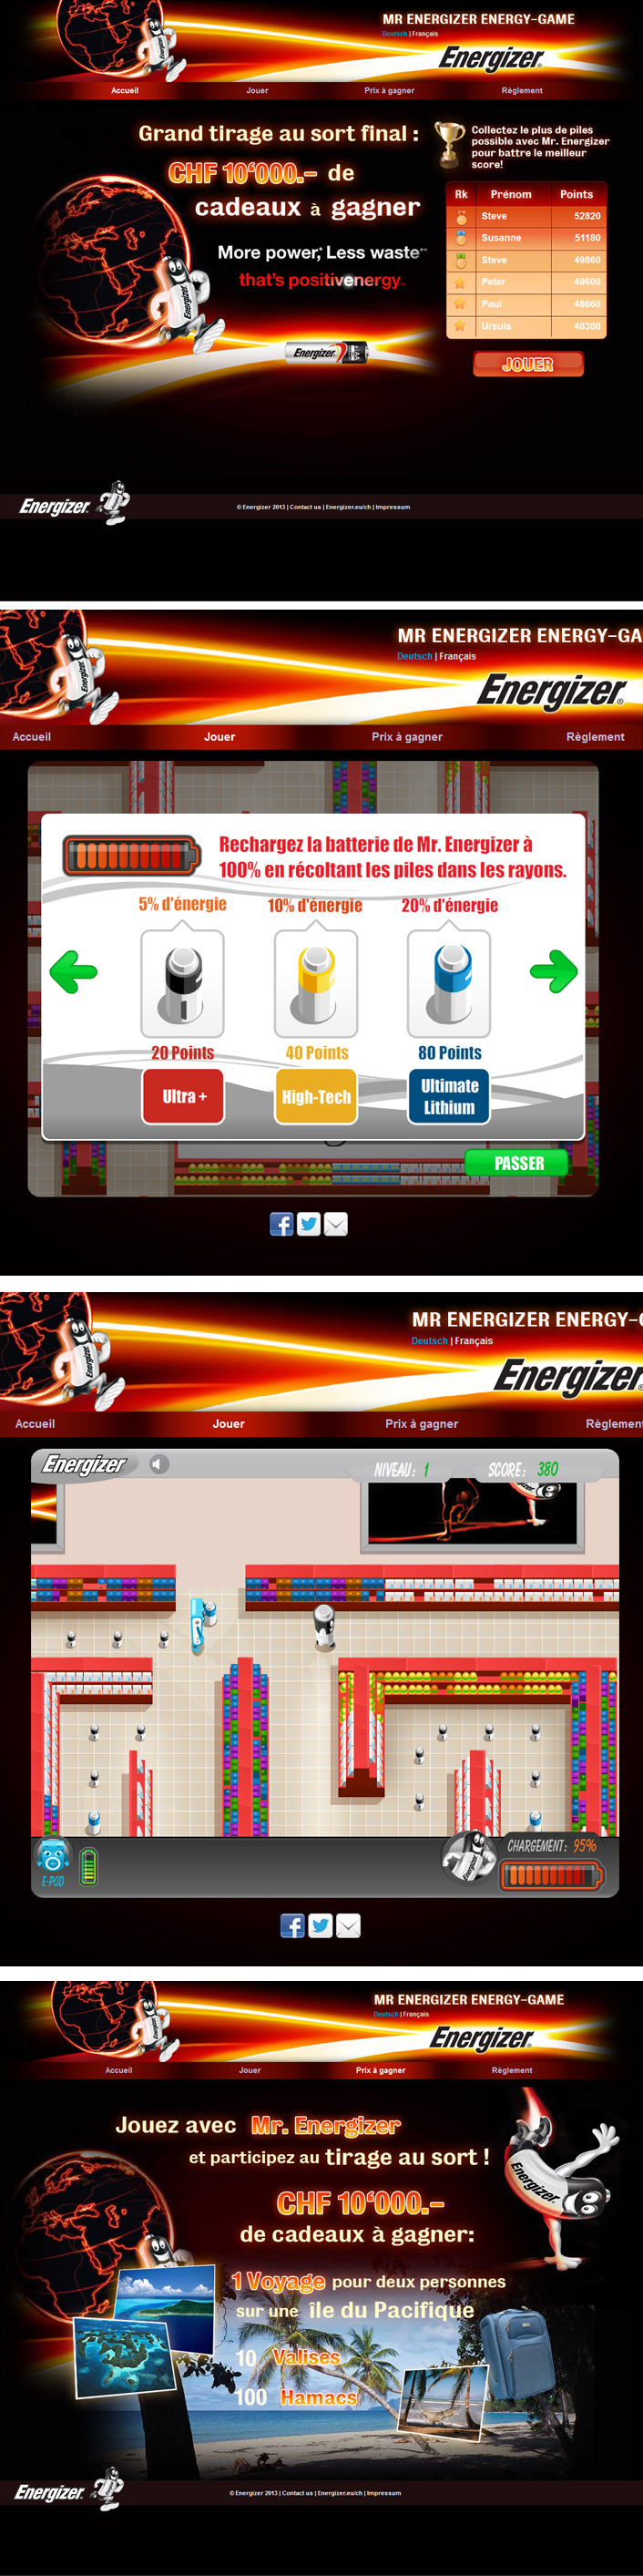 creation Jeu concours pacman  >> Energizer